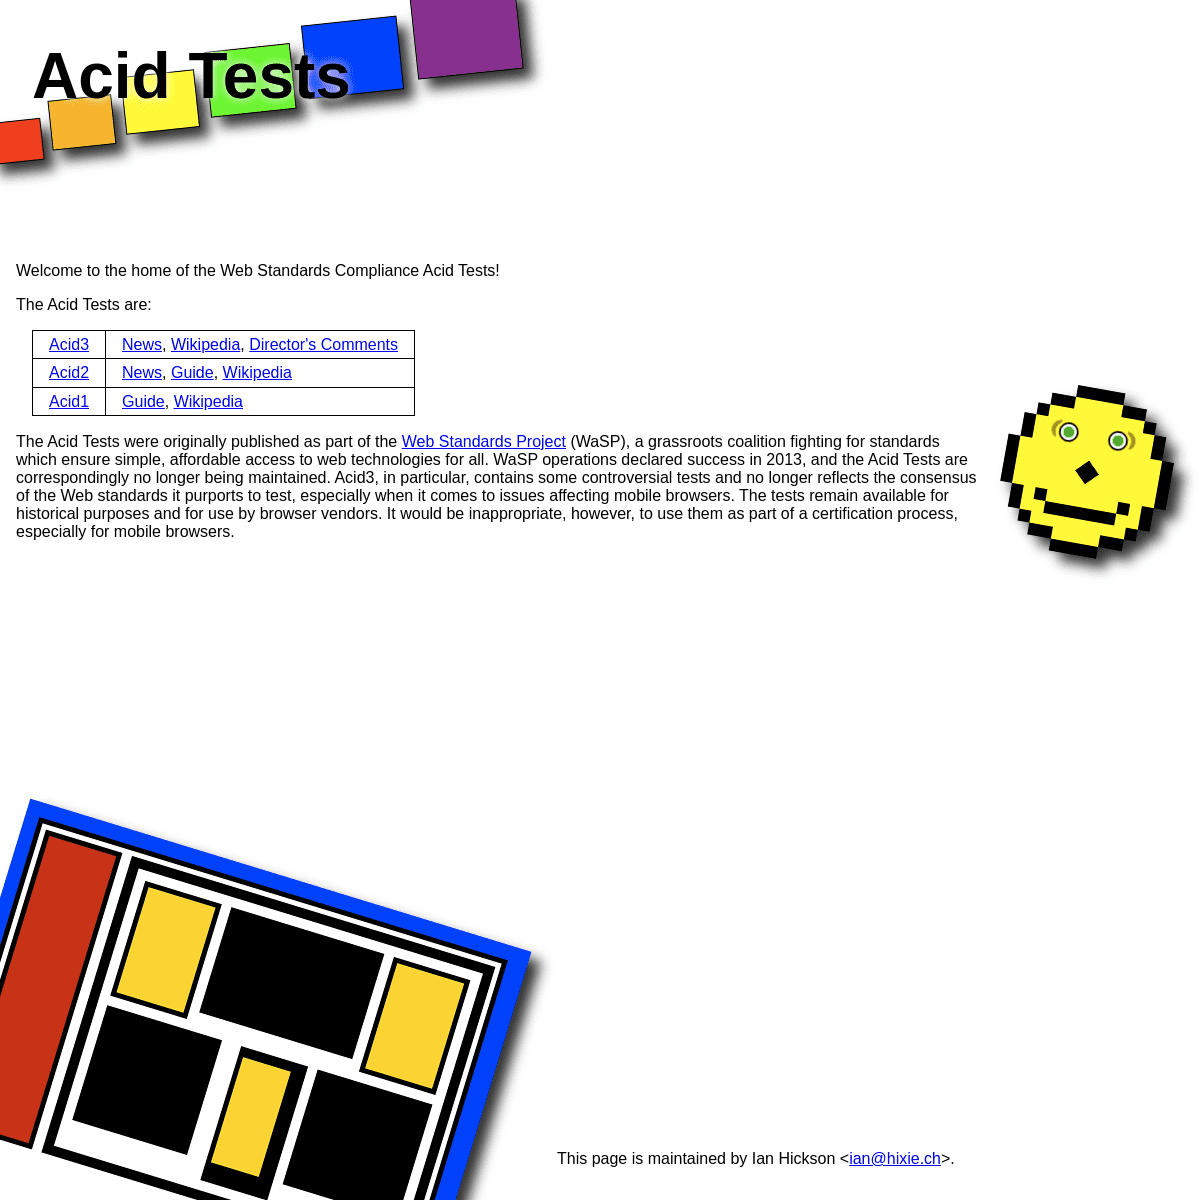 A complete backup of https://acidtests.org